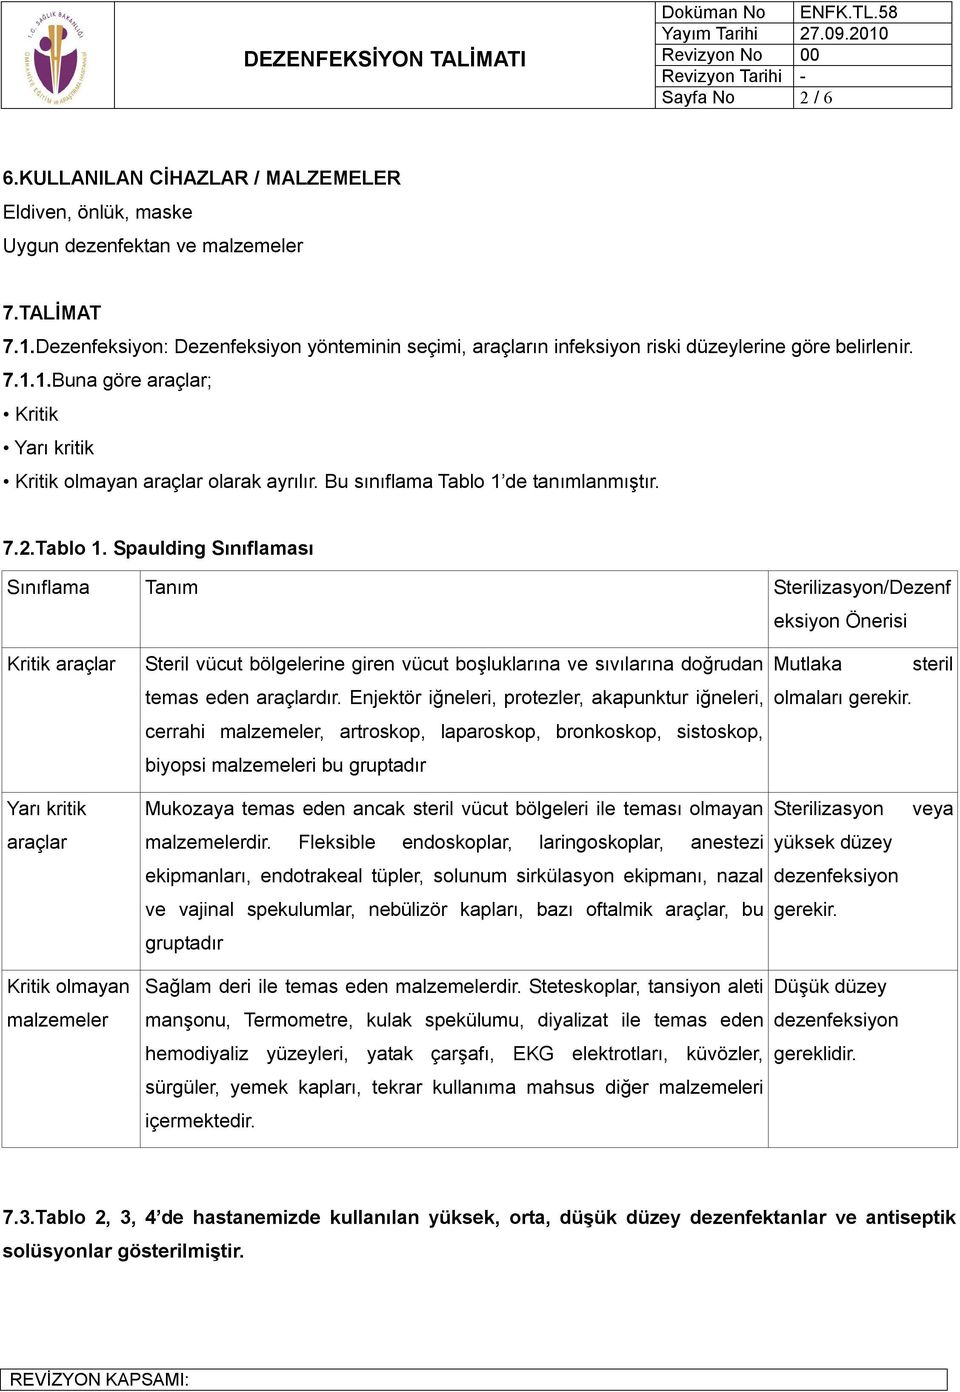 DEZENFEKSİYON TALİMATI - PDF Ücretsiz indirin